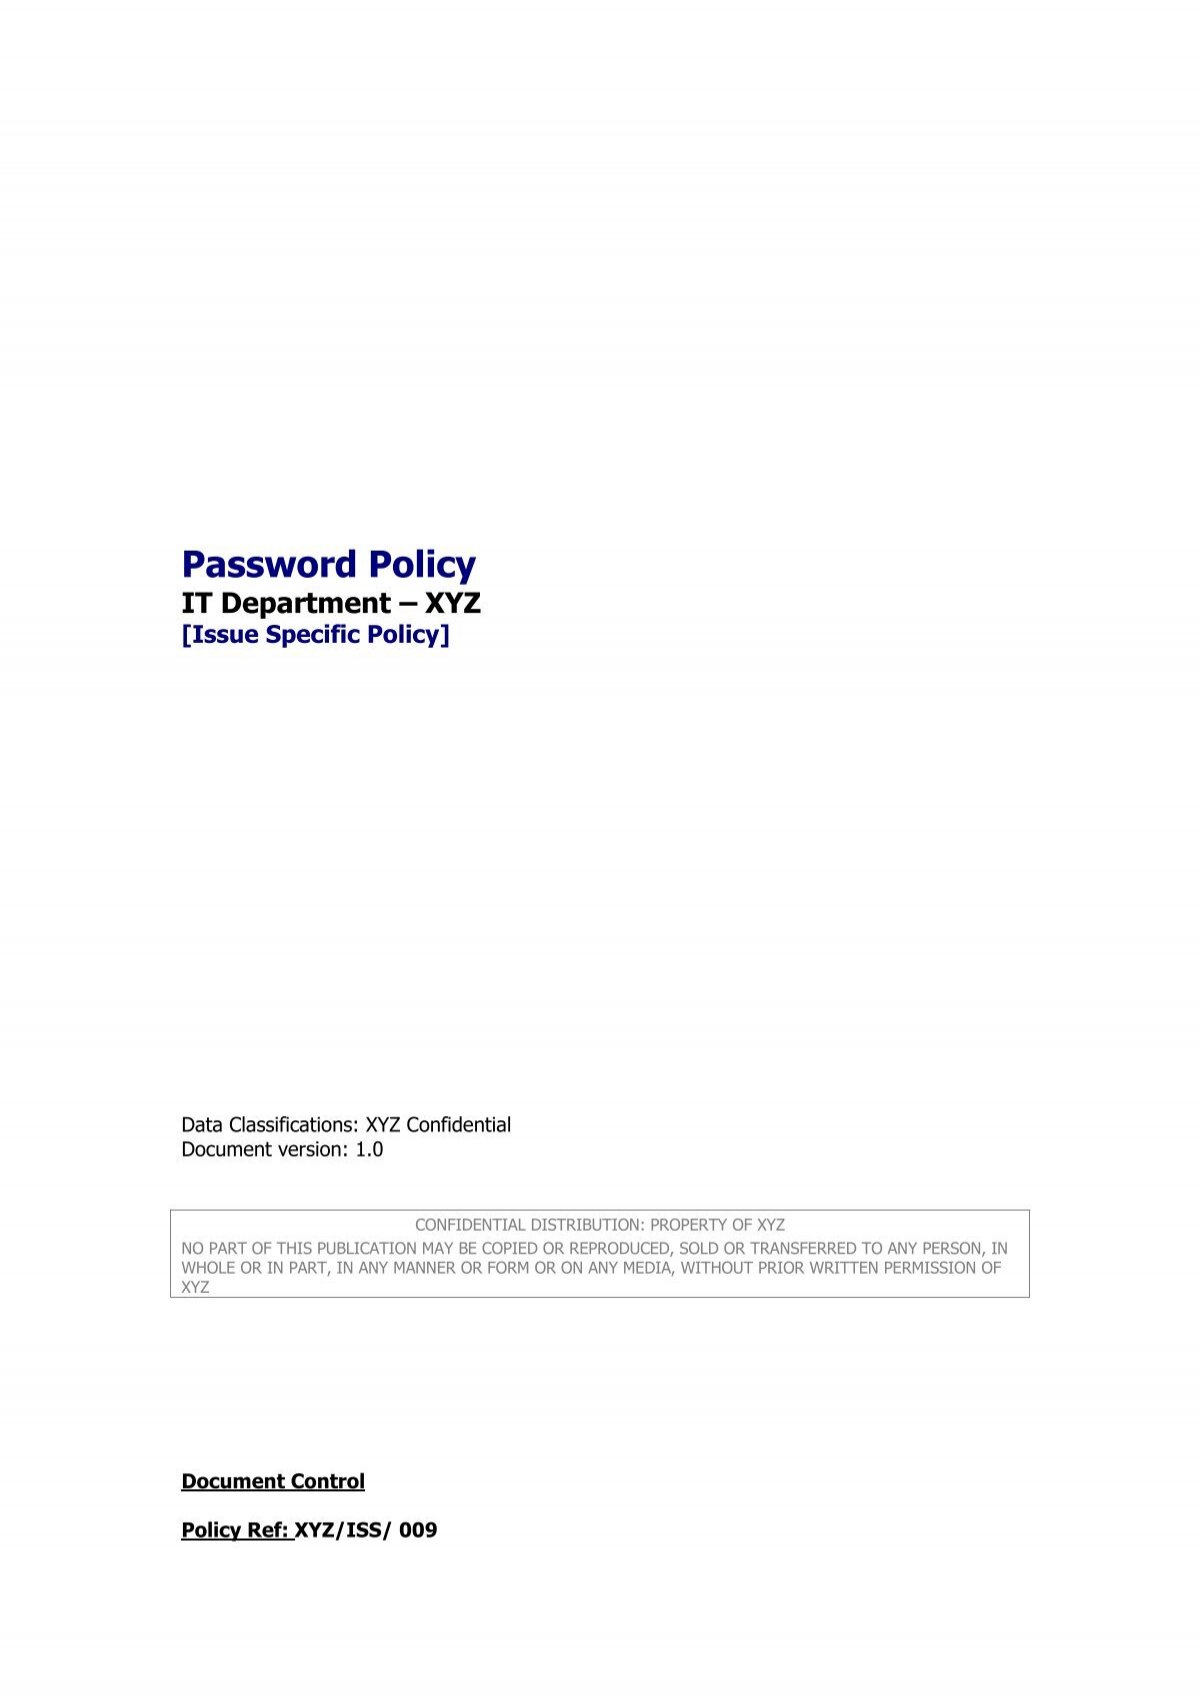 passwordpolicy